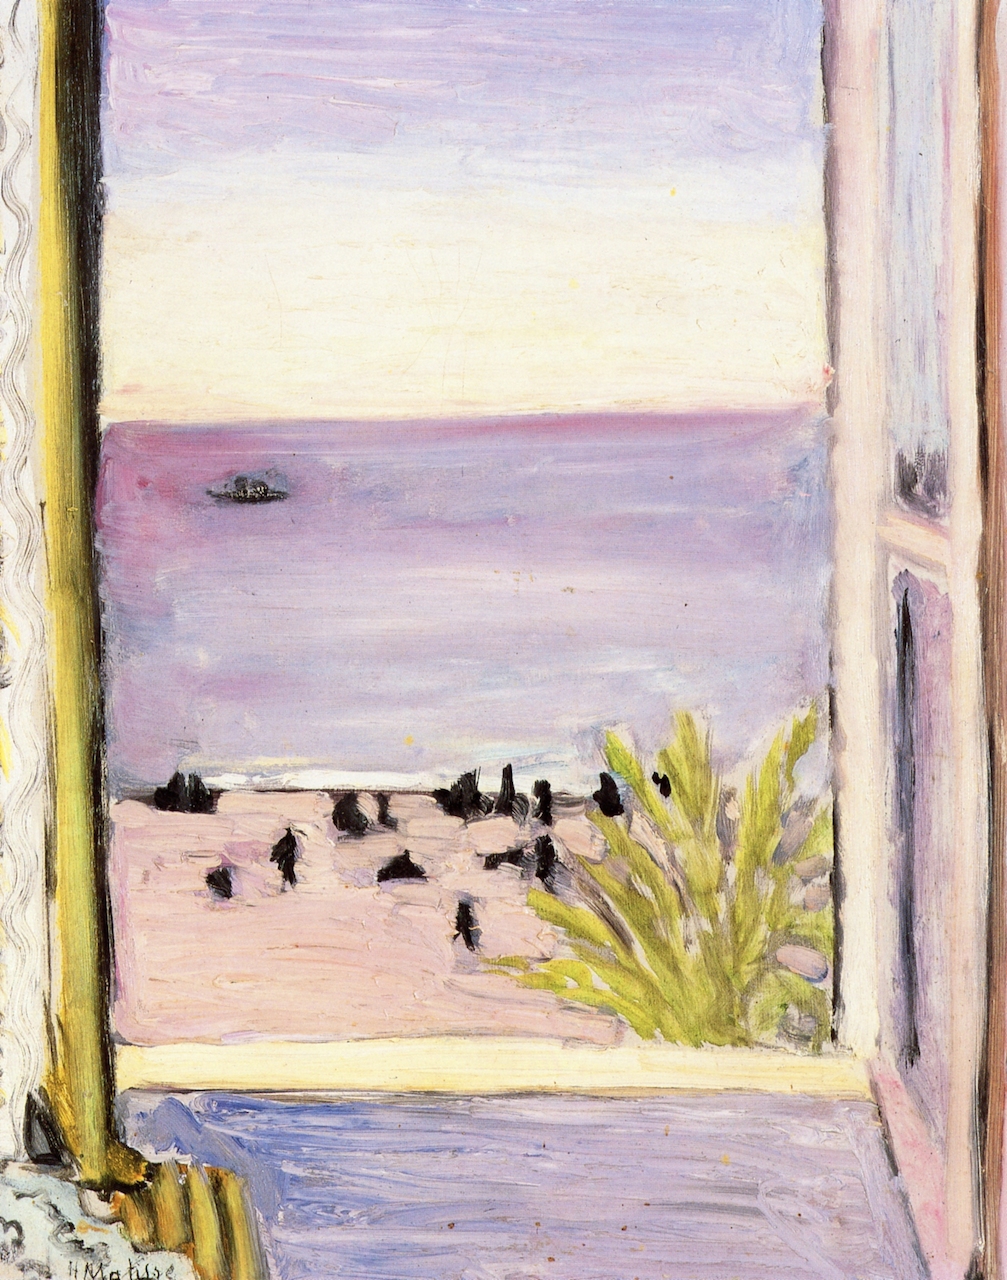 The Open Window (1921).